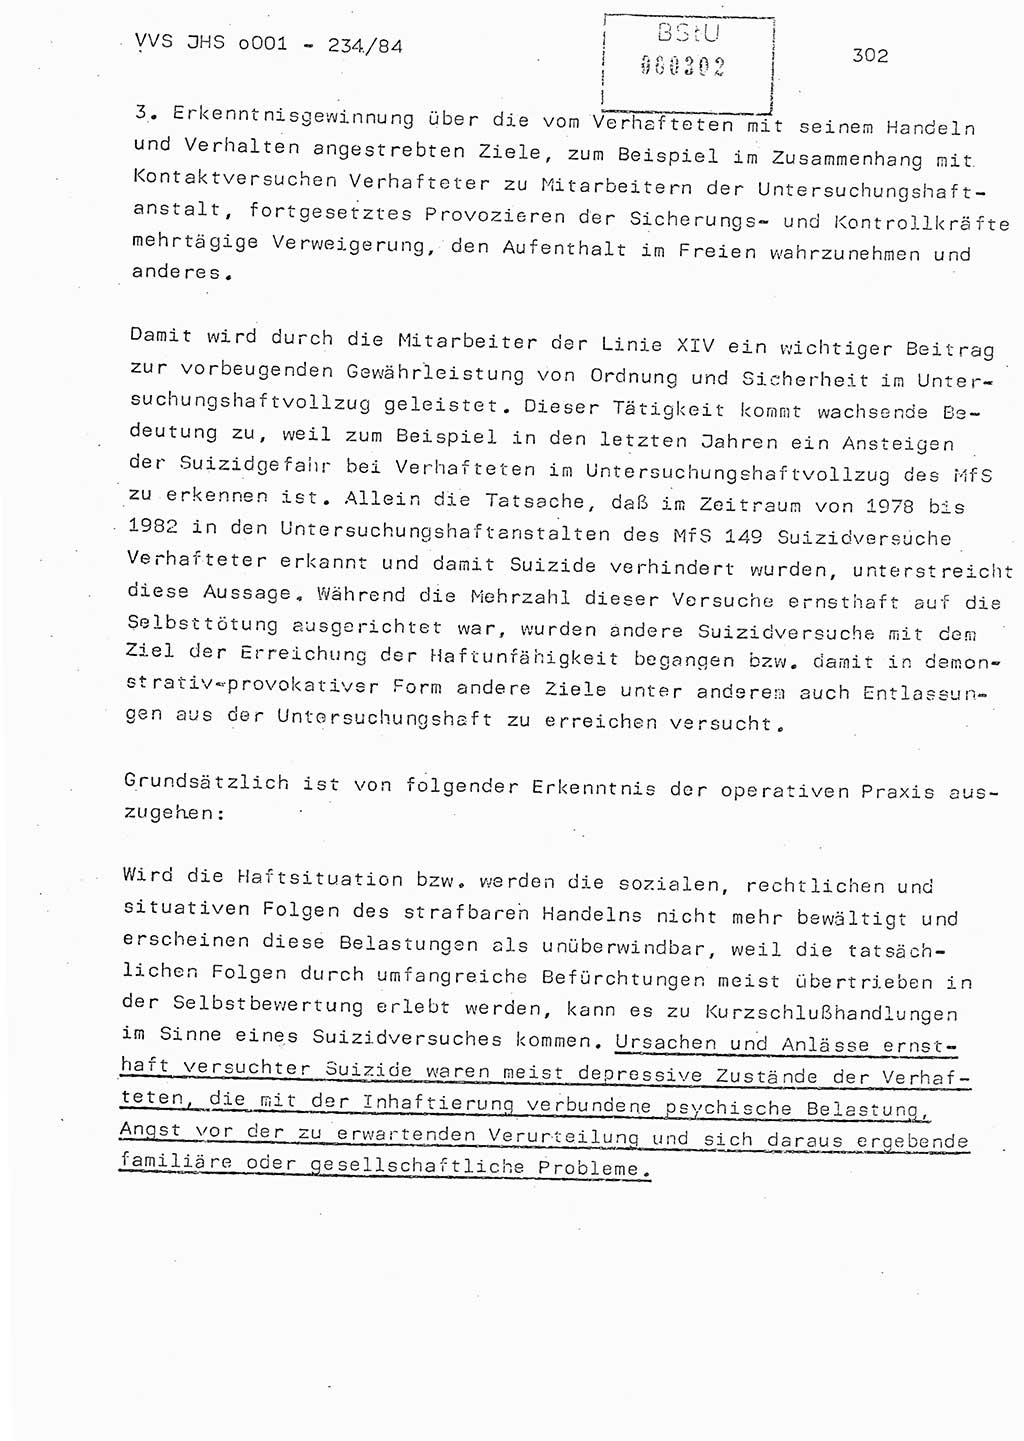 Dissertation Oberst Siegfried Rataizick (Abt. ⅩⅣ), Oberstleutnant Volkmar Heinz (Abt. ⅩⅣ), Oberstleutnant Werner Stein (HA Ⅸ), Hauptmann Heinz Conrad (JHS), Ministerium für Staatssicherheit (MfS) [Deutsche Demokratische Republik (DDR)], Juristische Hochschule (JHS), Vertrauliche Verschlußsache (VVS) o001-234/84, Potsdam 1984, Seite 302 (Diss. MfS DDR JHS VVS o001-234/84 1984, S. 302)